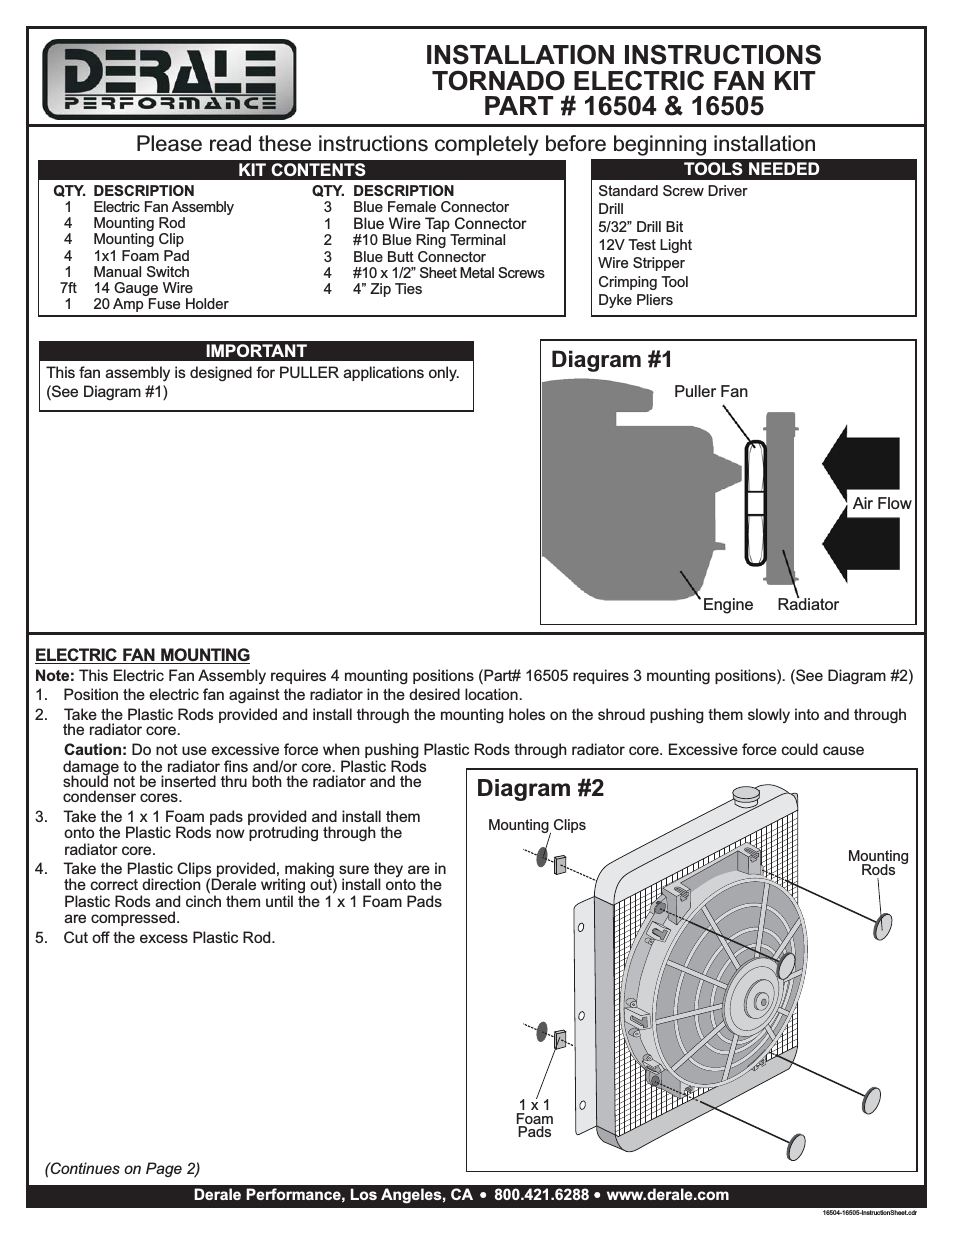 5" Tornado Electric Puller Fan, Premium Mounting Kit